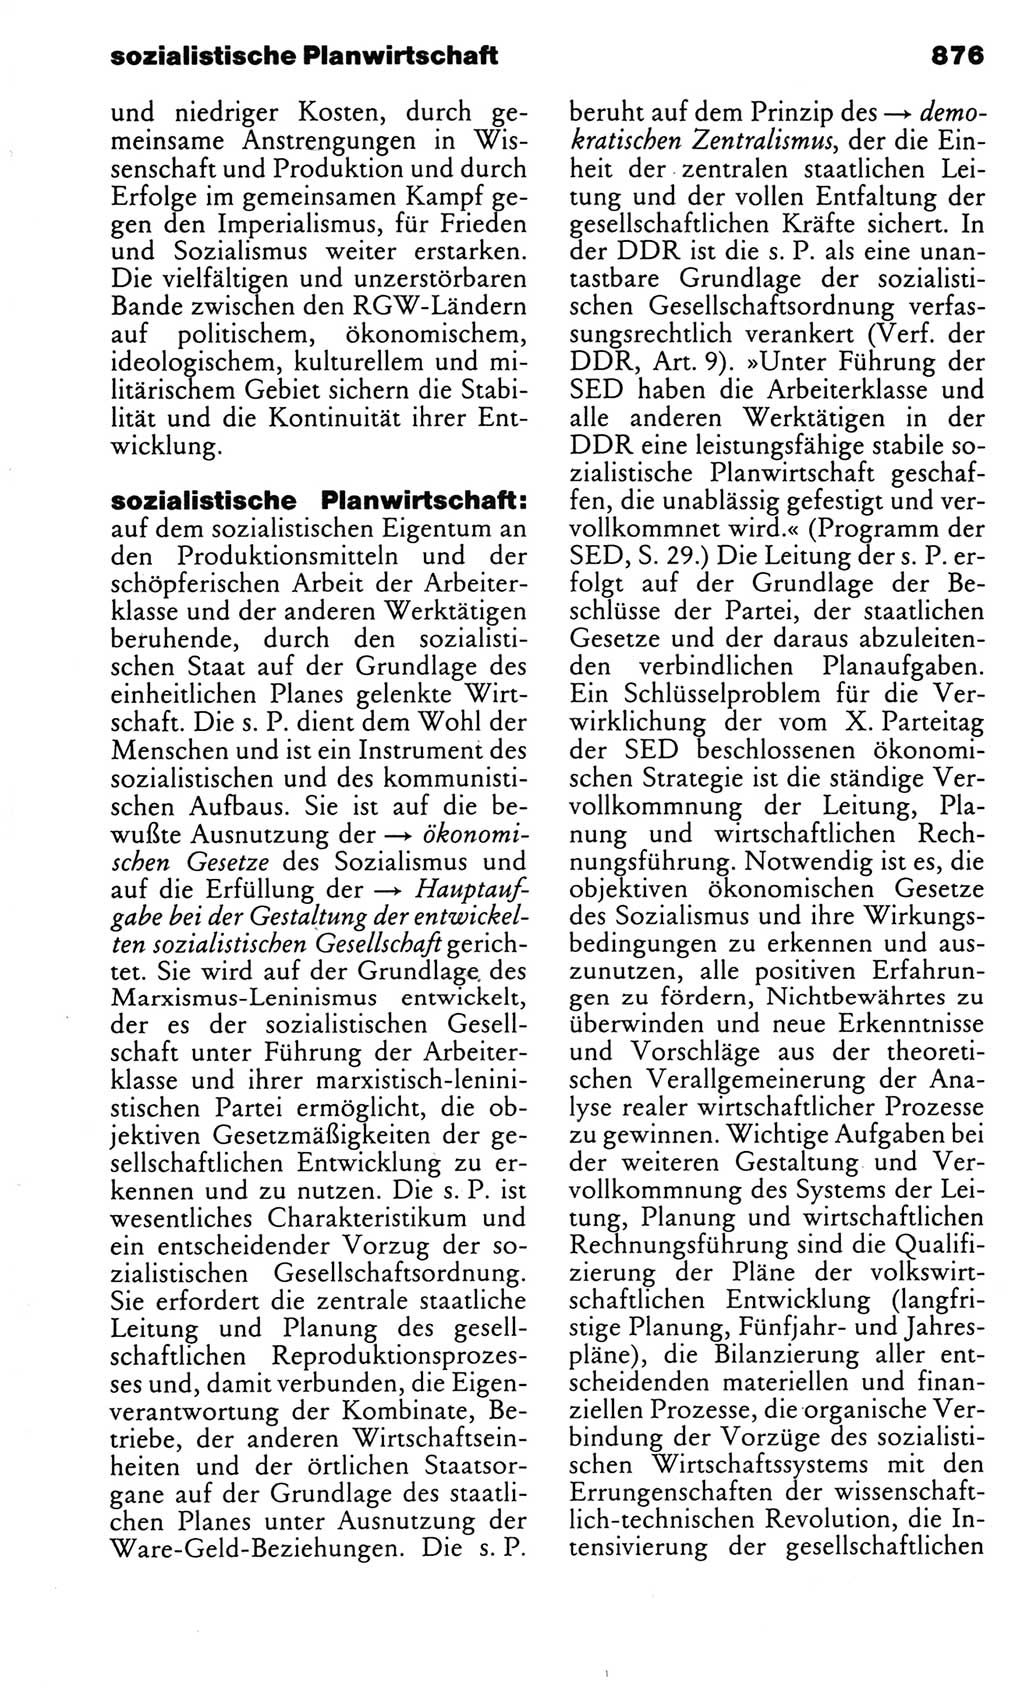 Kleines politisches Wörterbuch [Deutsche Demokratische Republik (DDR)] 1983, Seite 876 (Kl. pol. Wb. DDR 1983, S. 876)